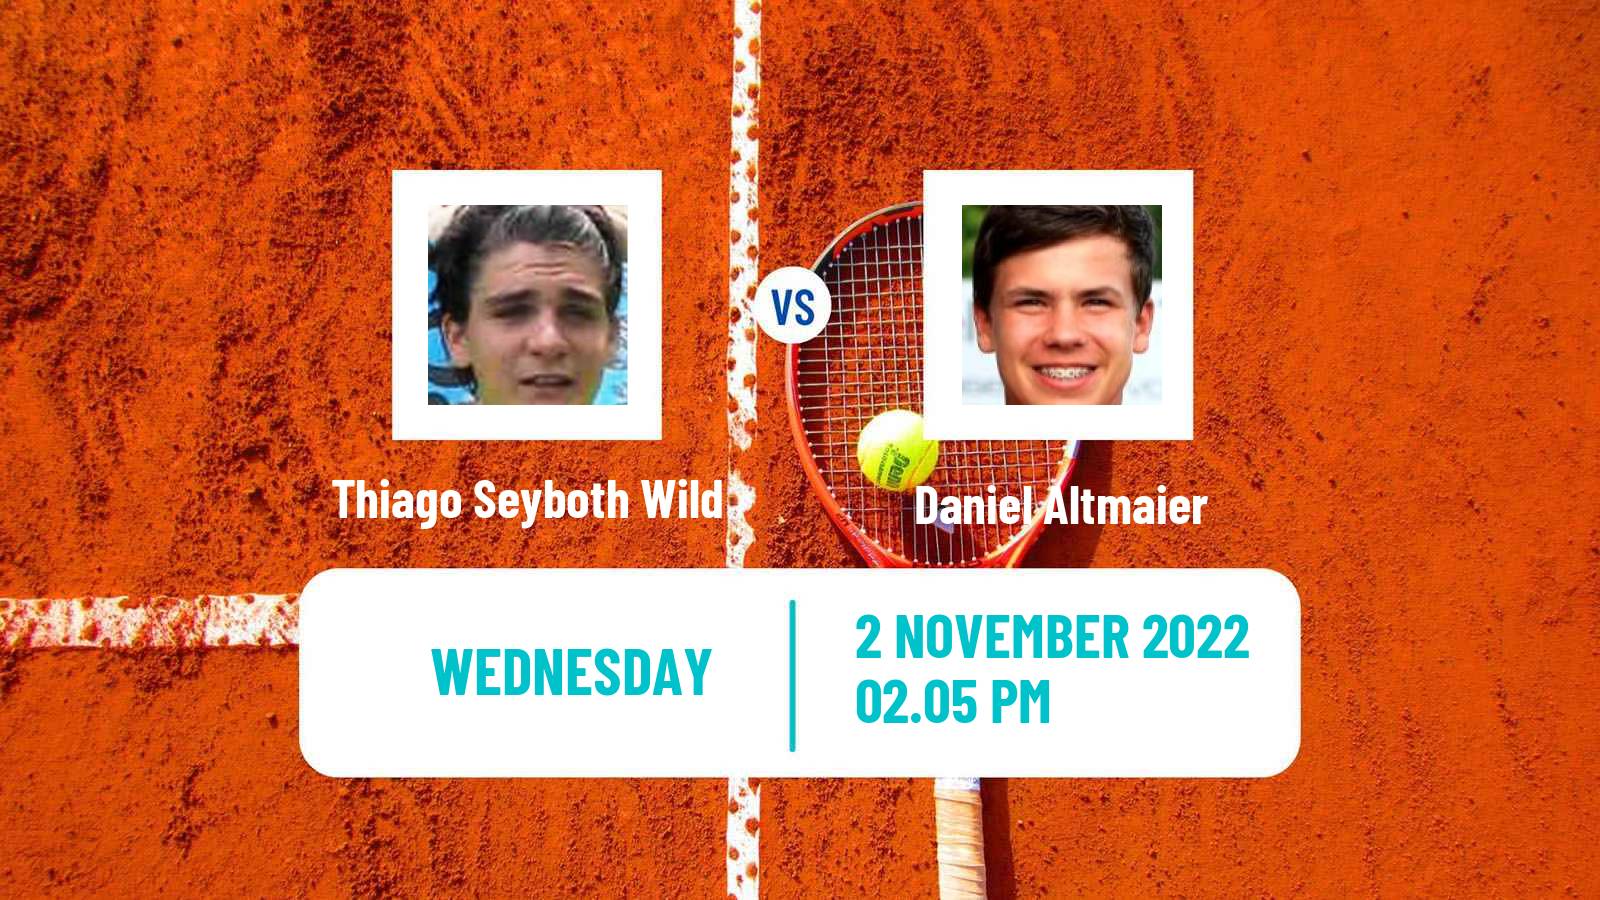 Tennis ATP Challenger Thiago Seyboth Wild - Daniel Altmaier